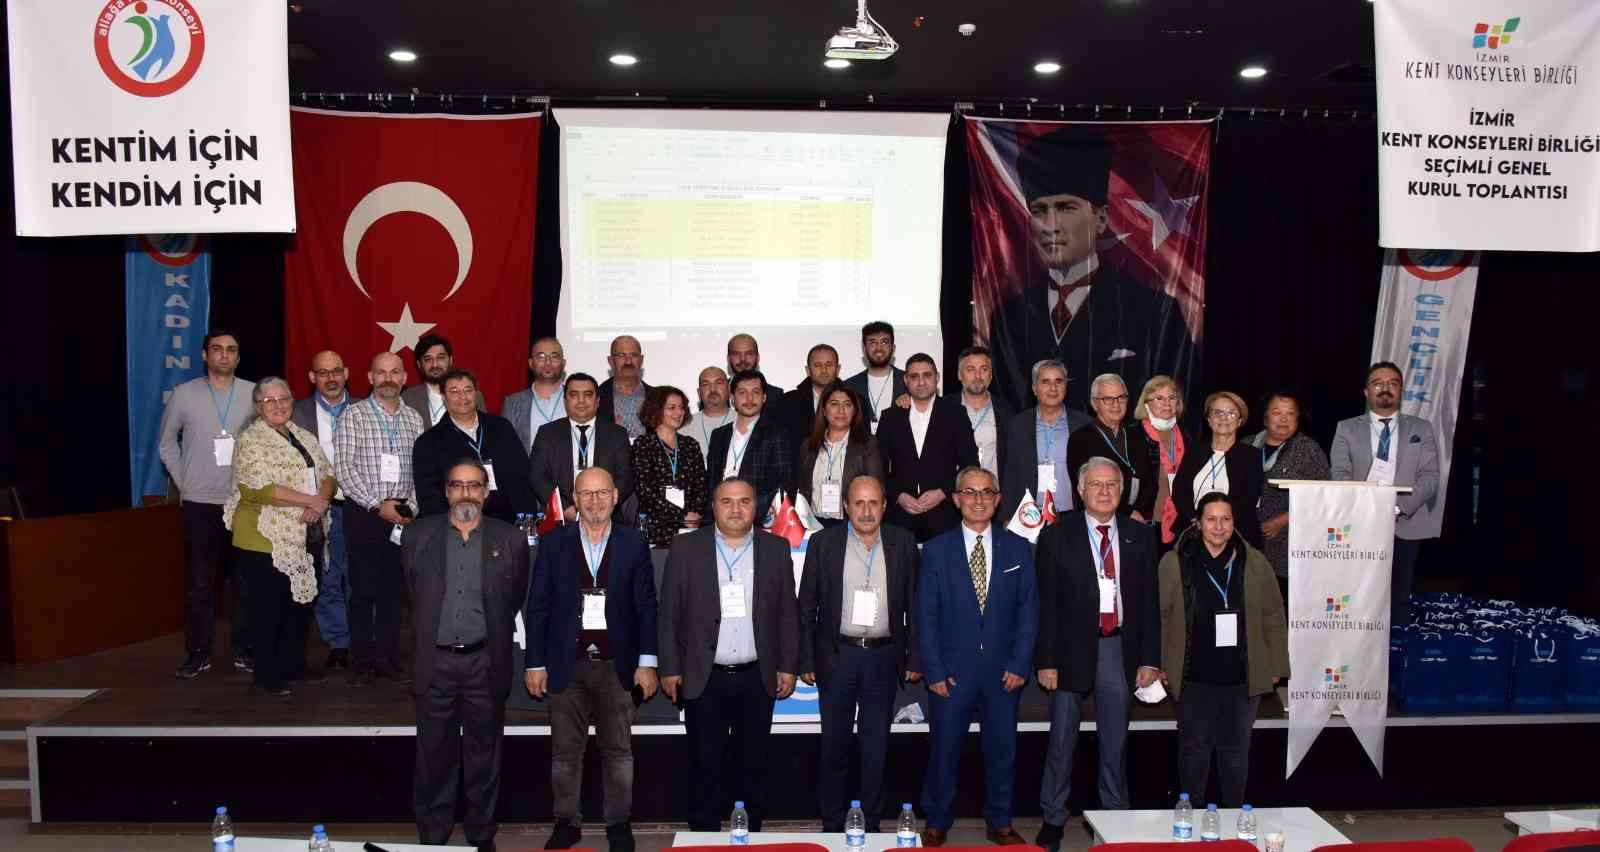 İzmir Kent Konseyleri Birliği Seçimli Genel Kurulu Aliağa’da yapıldı #izmir